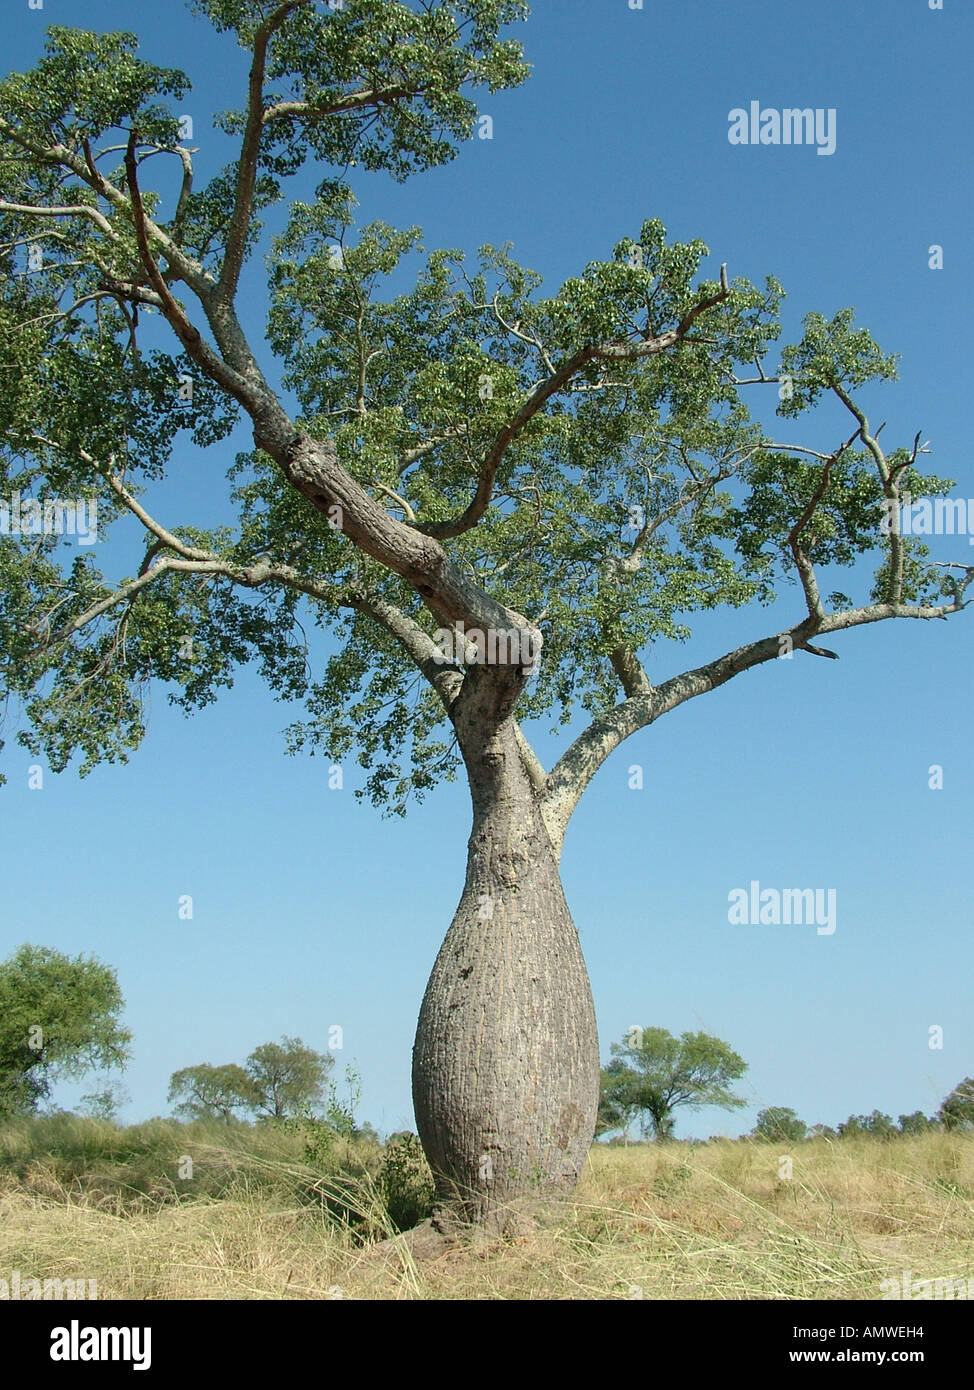  شجرة Torobochi في بوليفيا Arbre-bouteille-chorisia-insignis-a-une-savane-typique-gran-chaco-paraguay-amweh4